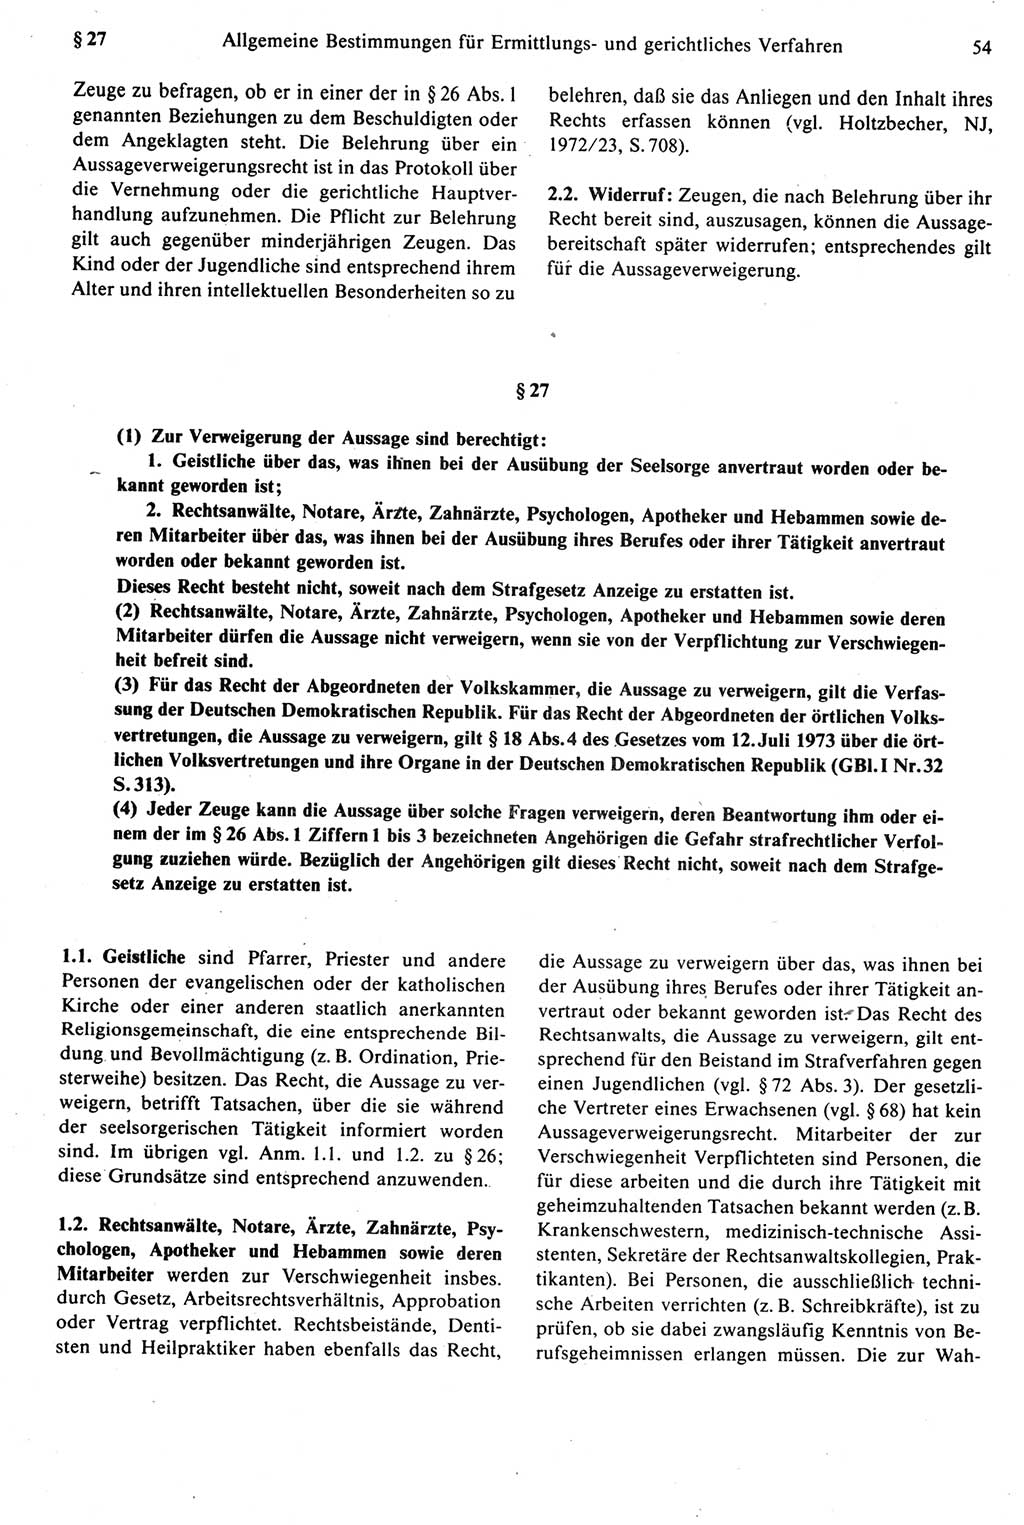 Strafprozeßrecht der DDR [Deutsche Demokratische Republik], Kommentar zur Strafprozeßordnung (StPO) 1987, Seite 54 (Strafprozeßr. DDR Komm. StPO 1987, S. 54)